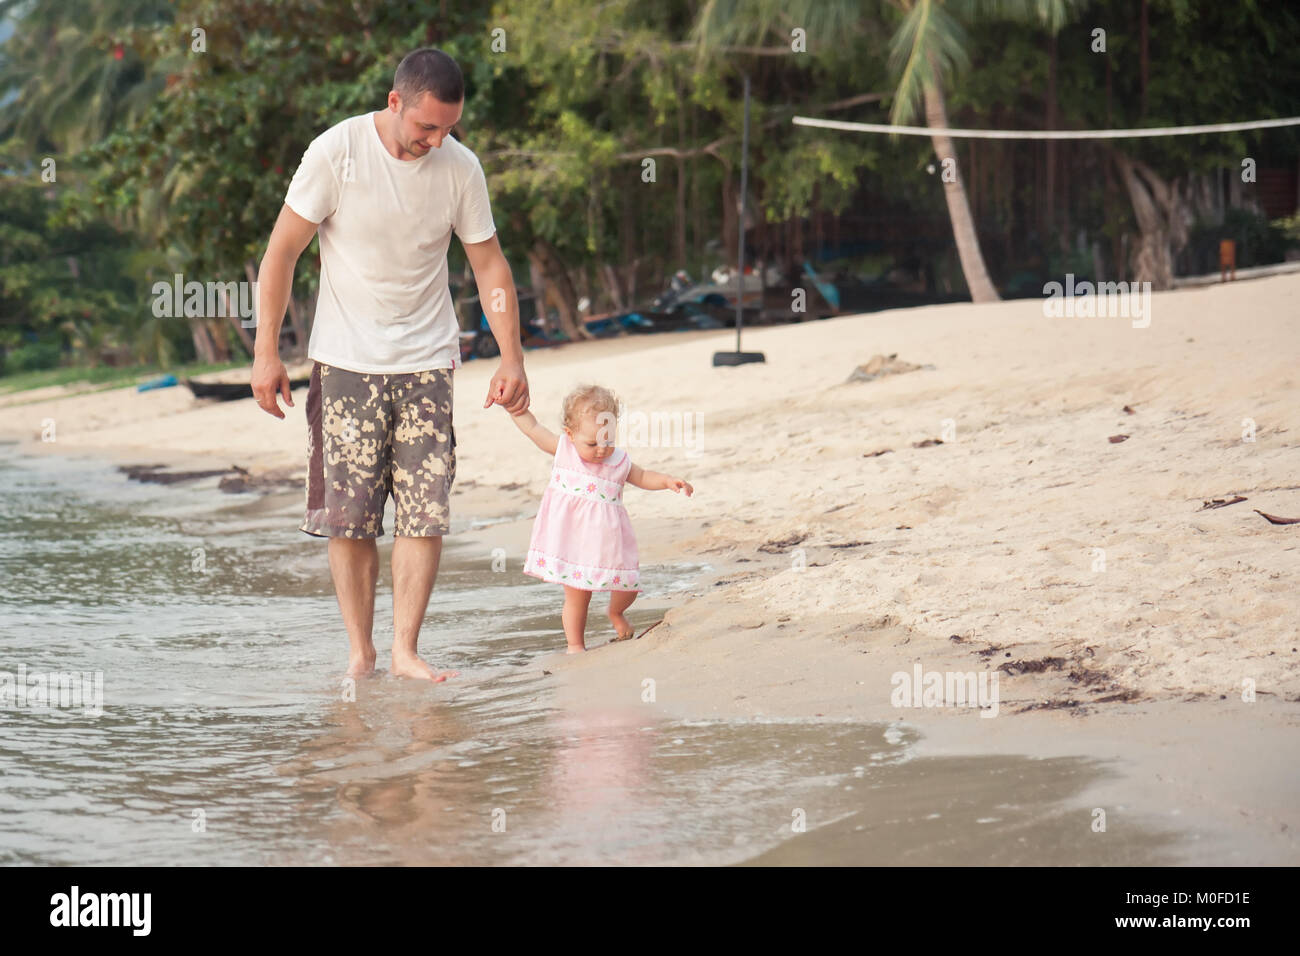 Heureux père et petite fille à marcher ensemble avec holding hands on beach Banque D'Images